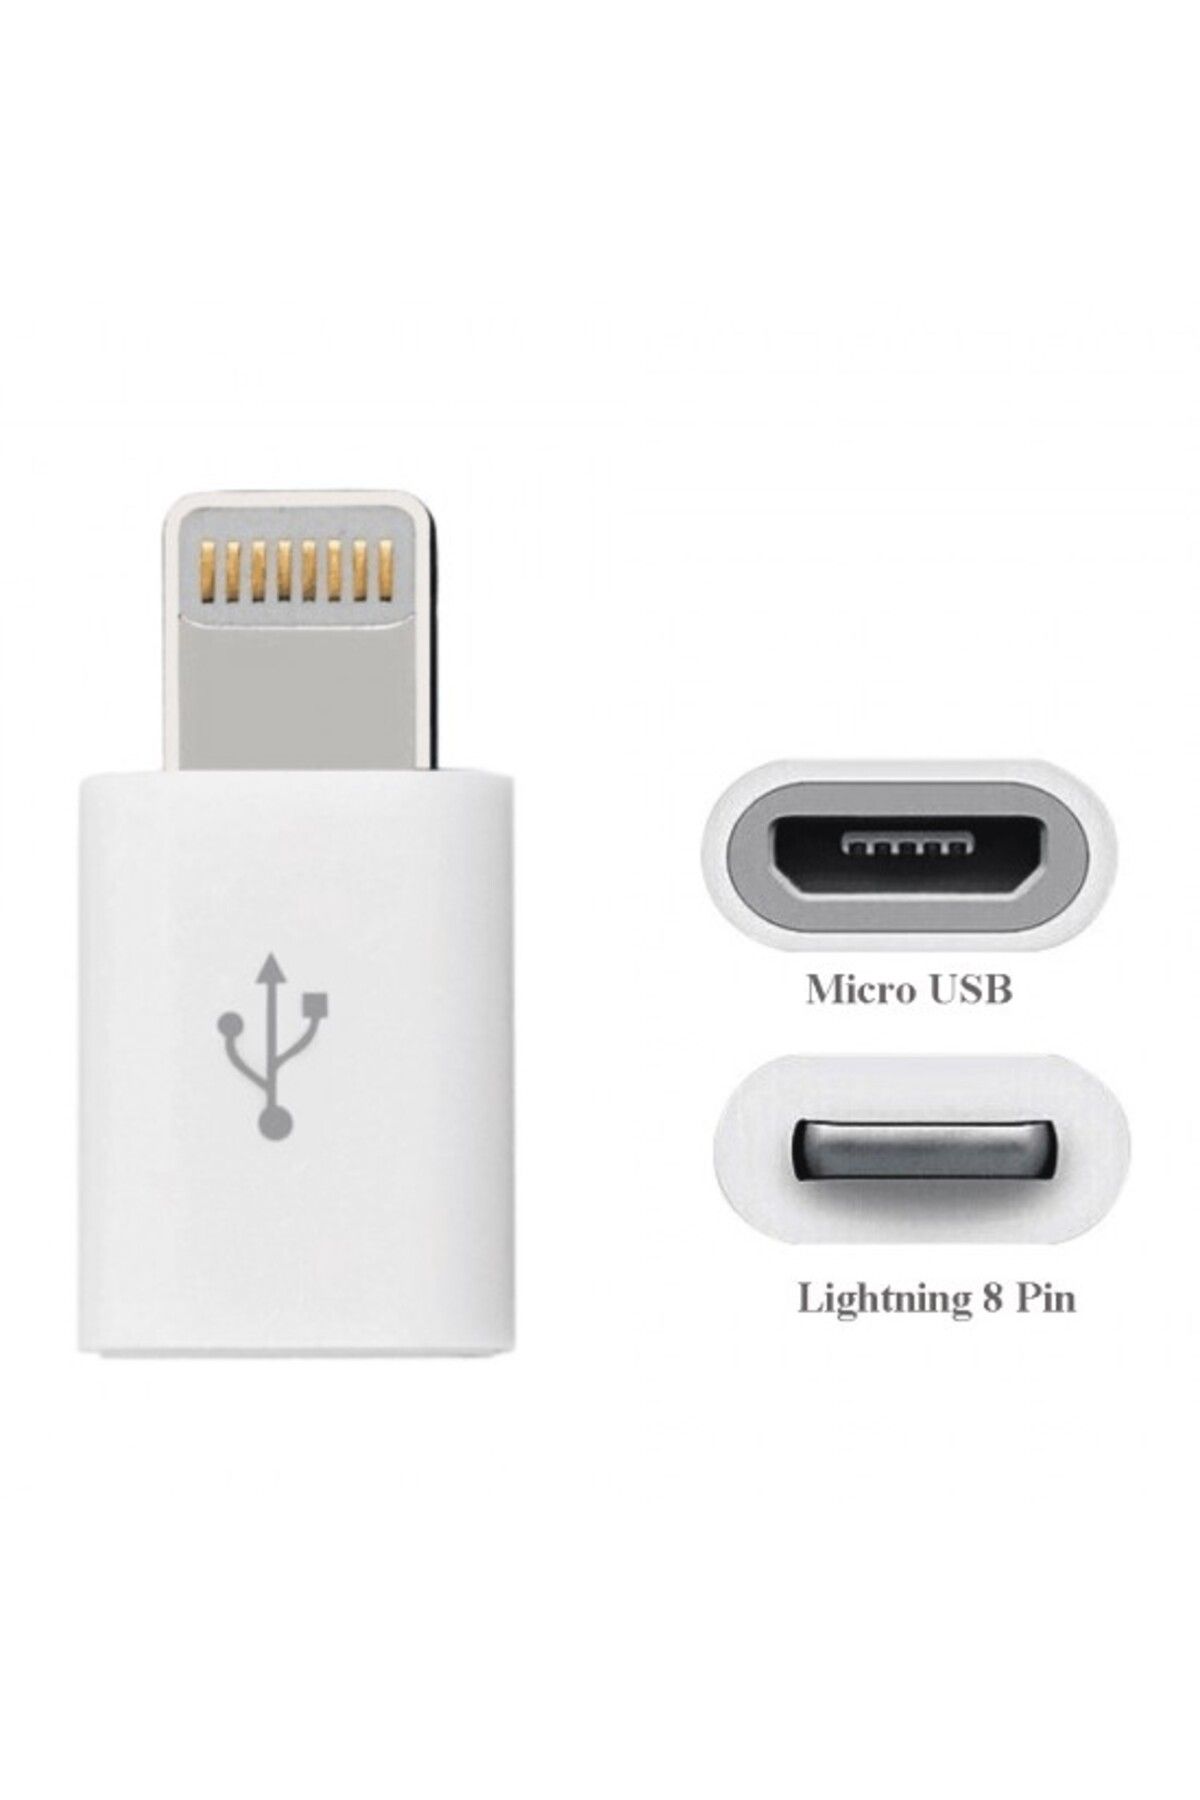 Maviaybilisim For iPhone Lightning 8 Pin için Micro USB Dönüştürücü Data/Şarj Adaptörü